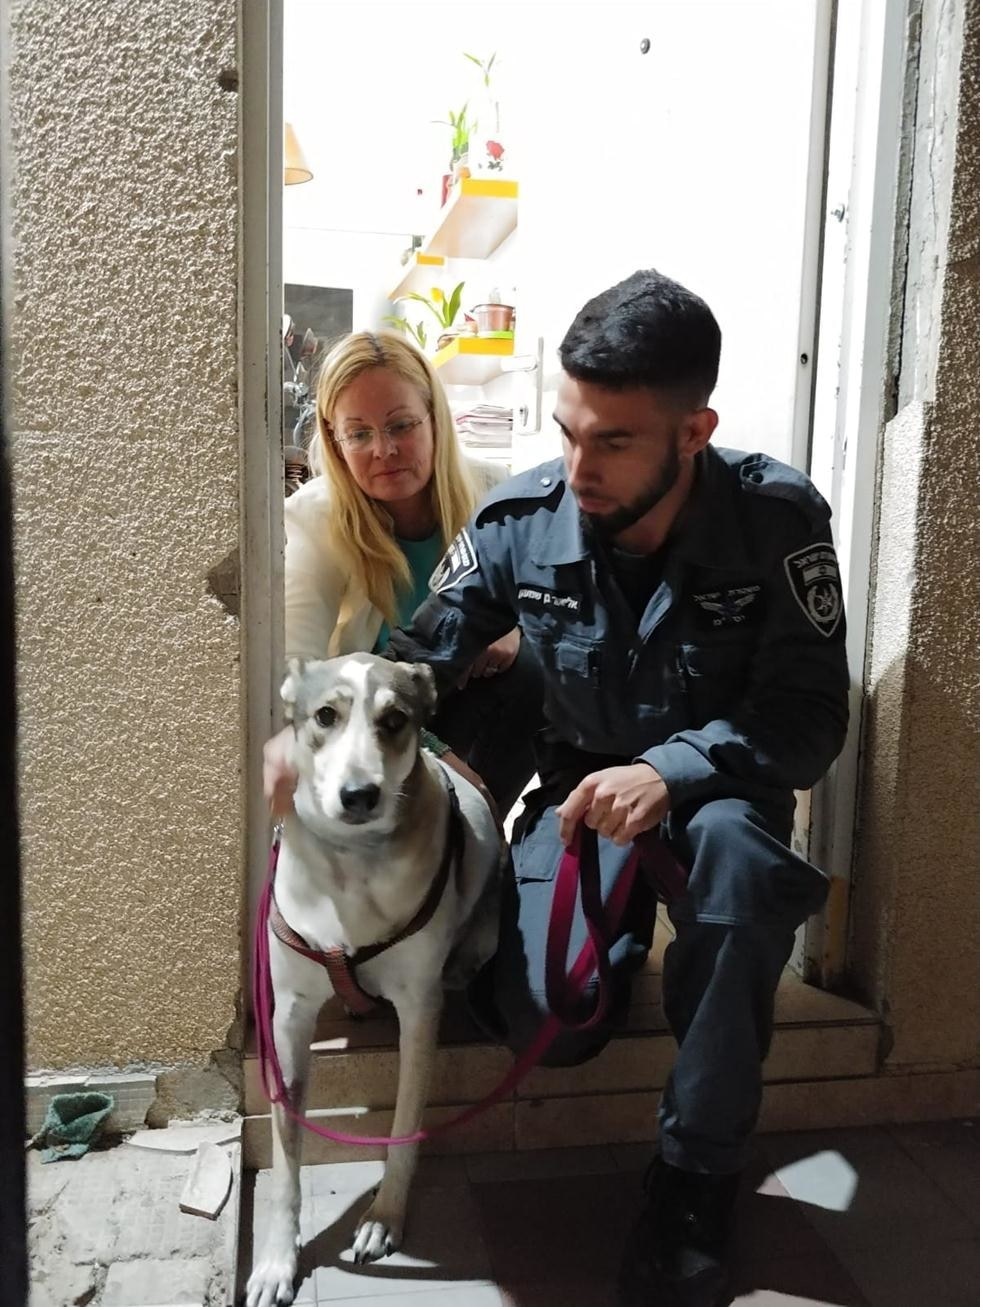 Даниэла и полицейский забирают собаку у хозяина. Фото: "Эйлат энималс"